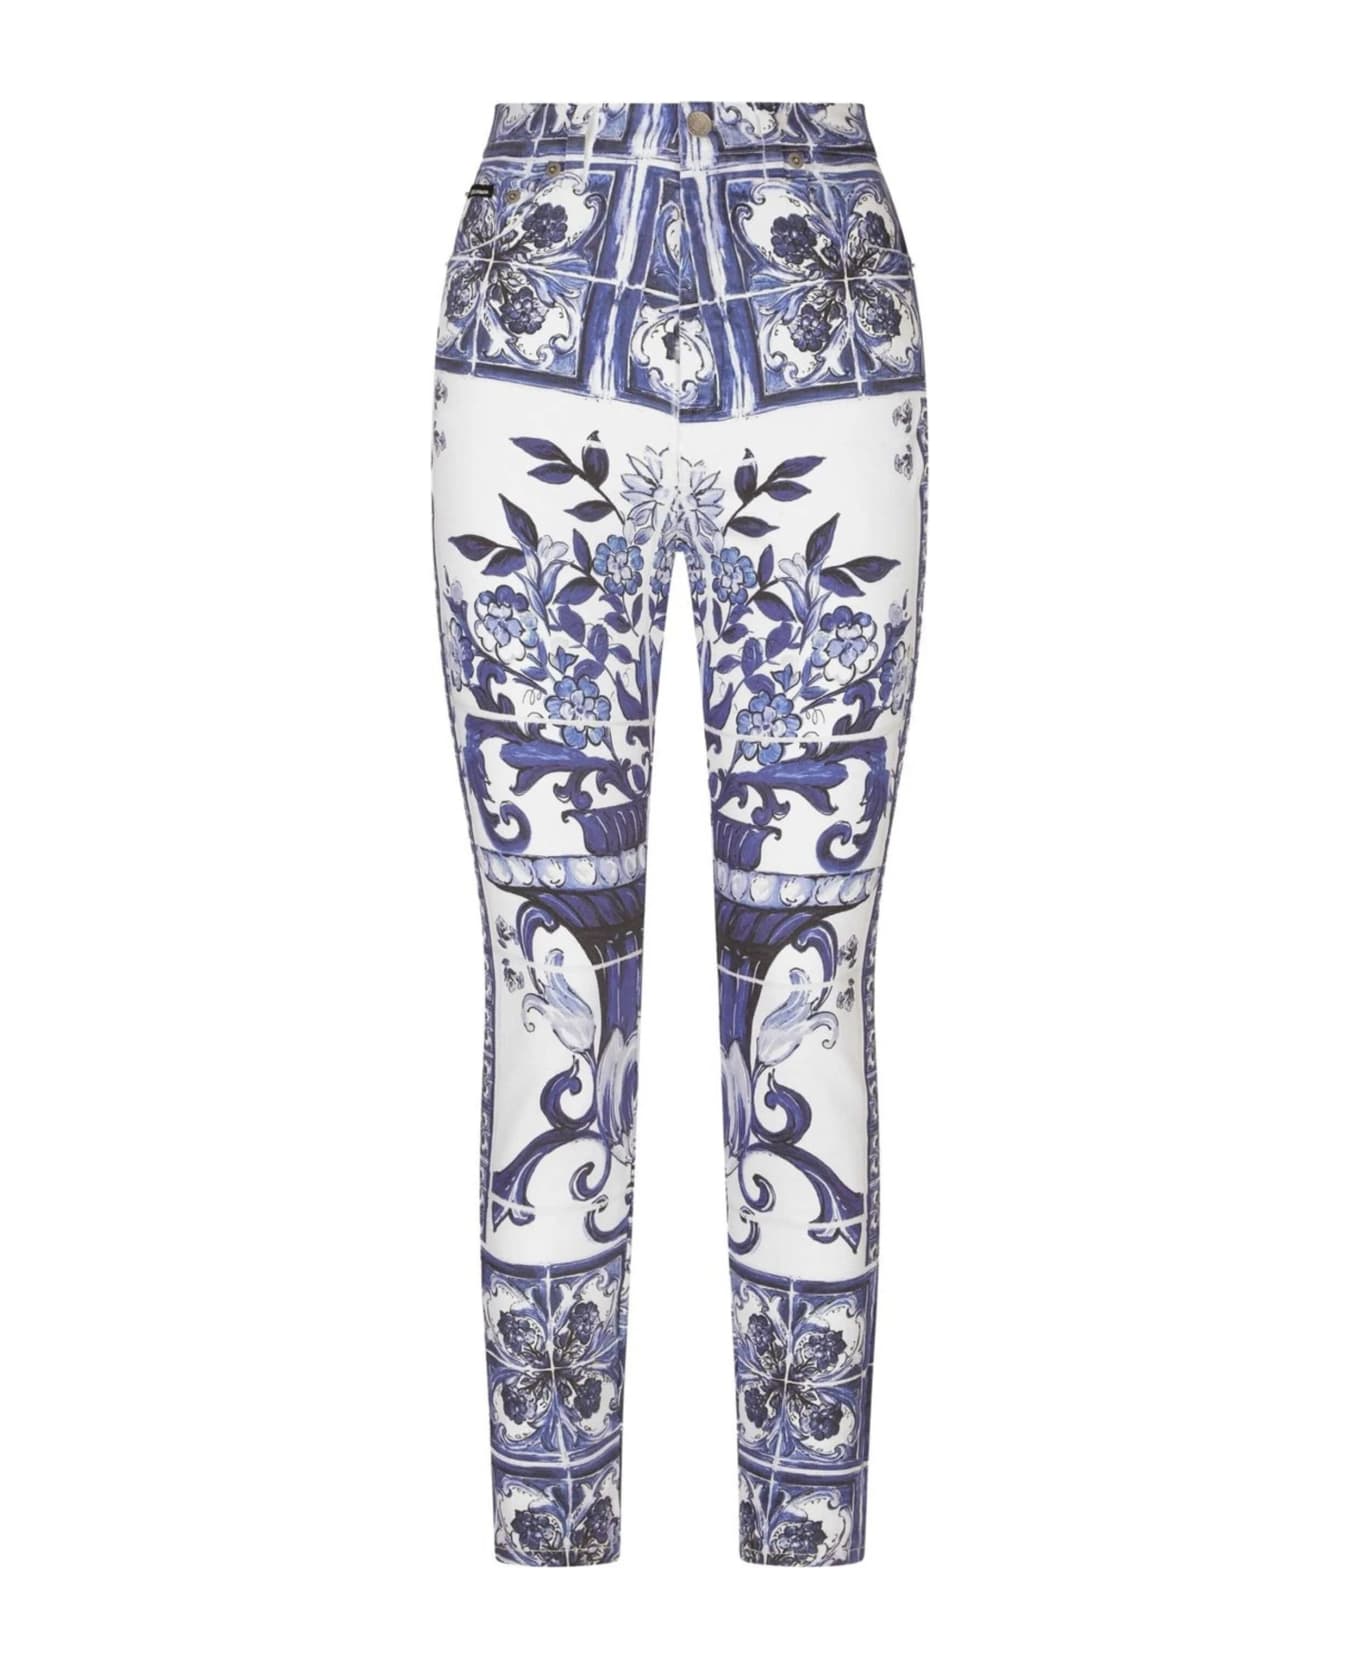 Dolce & Gabbana Pantaloni 5 Tasche St Maiolica - Blu レギンス